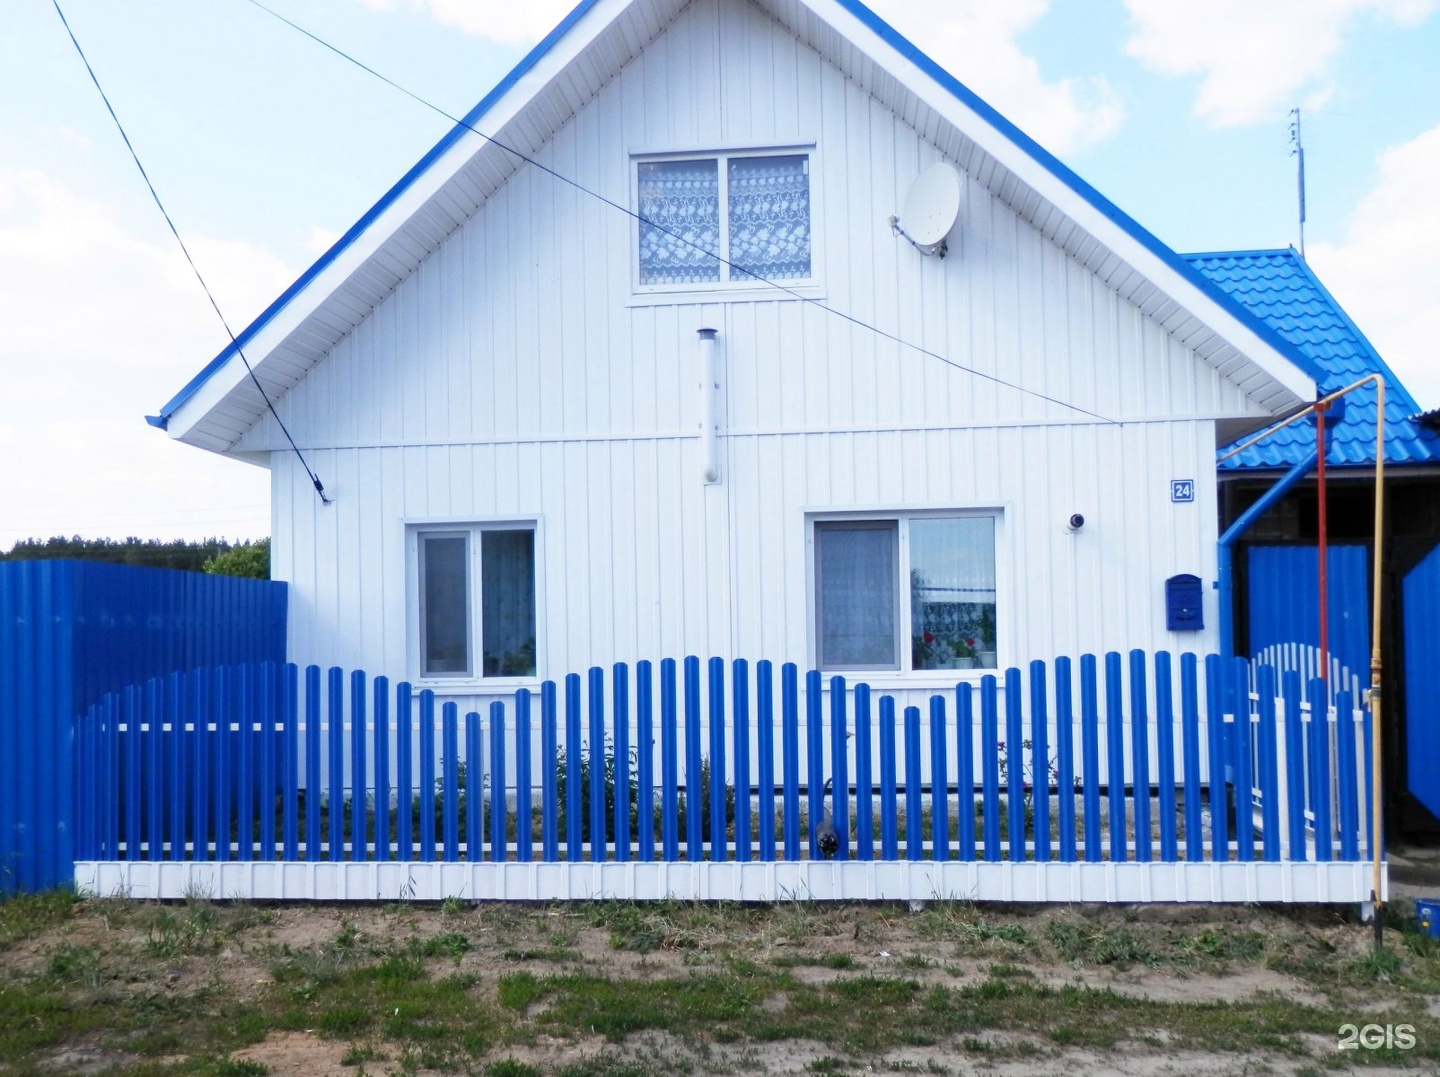 Дом с синей крышей и забором